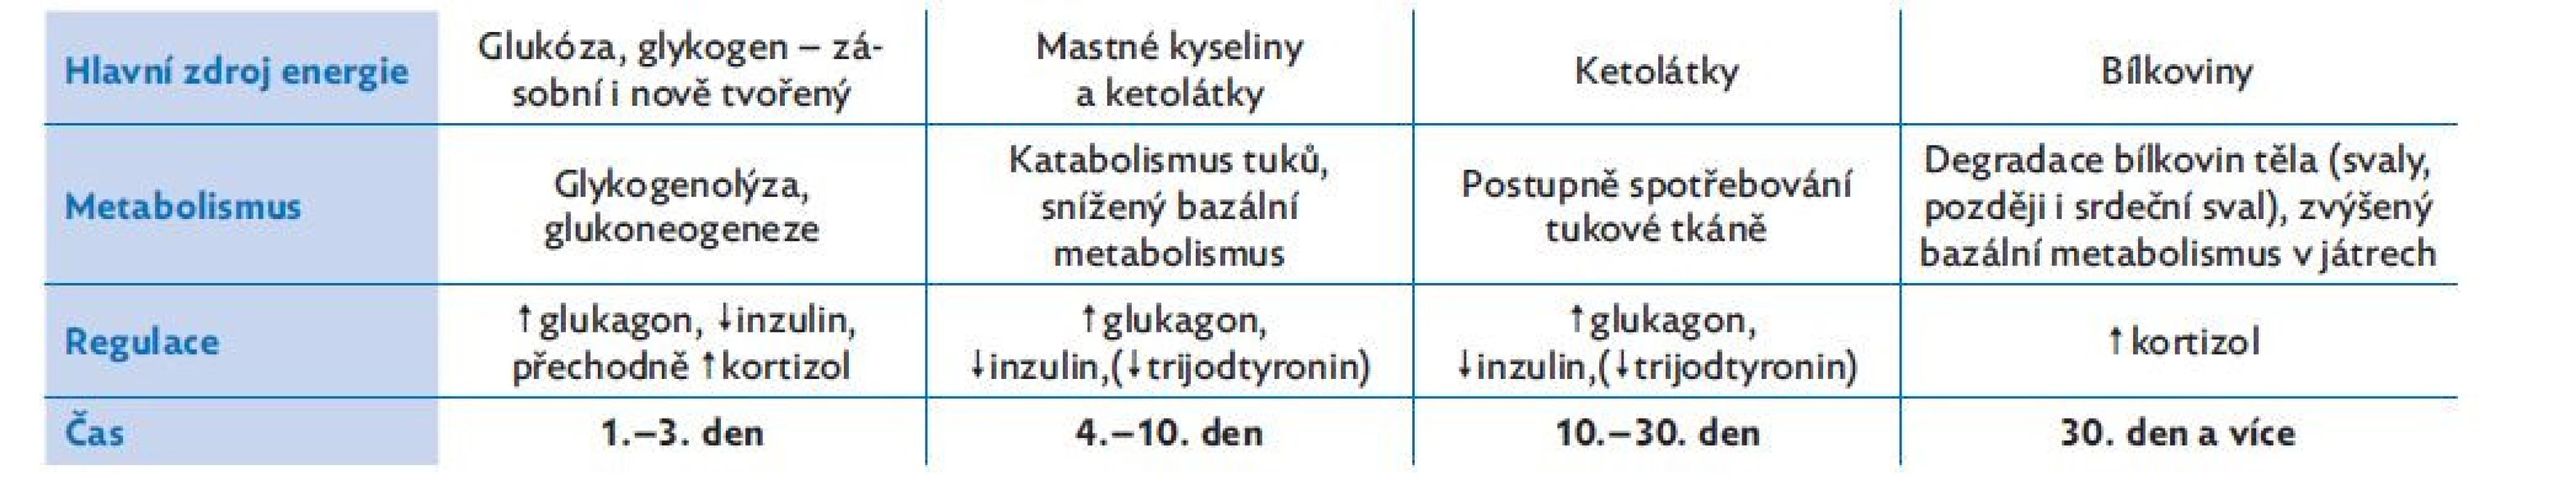 Změny metabolismu při hladovění – průběh v čase, upraveno dle(3,6,7)